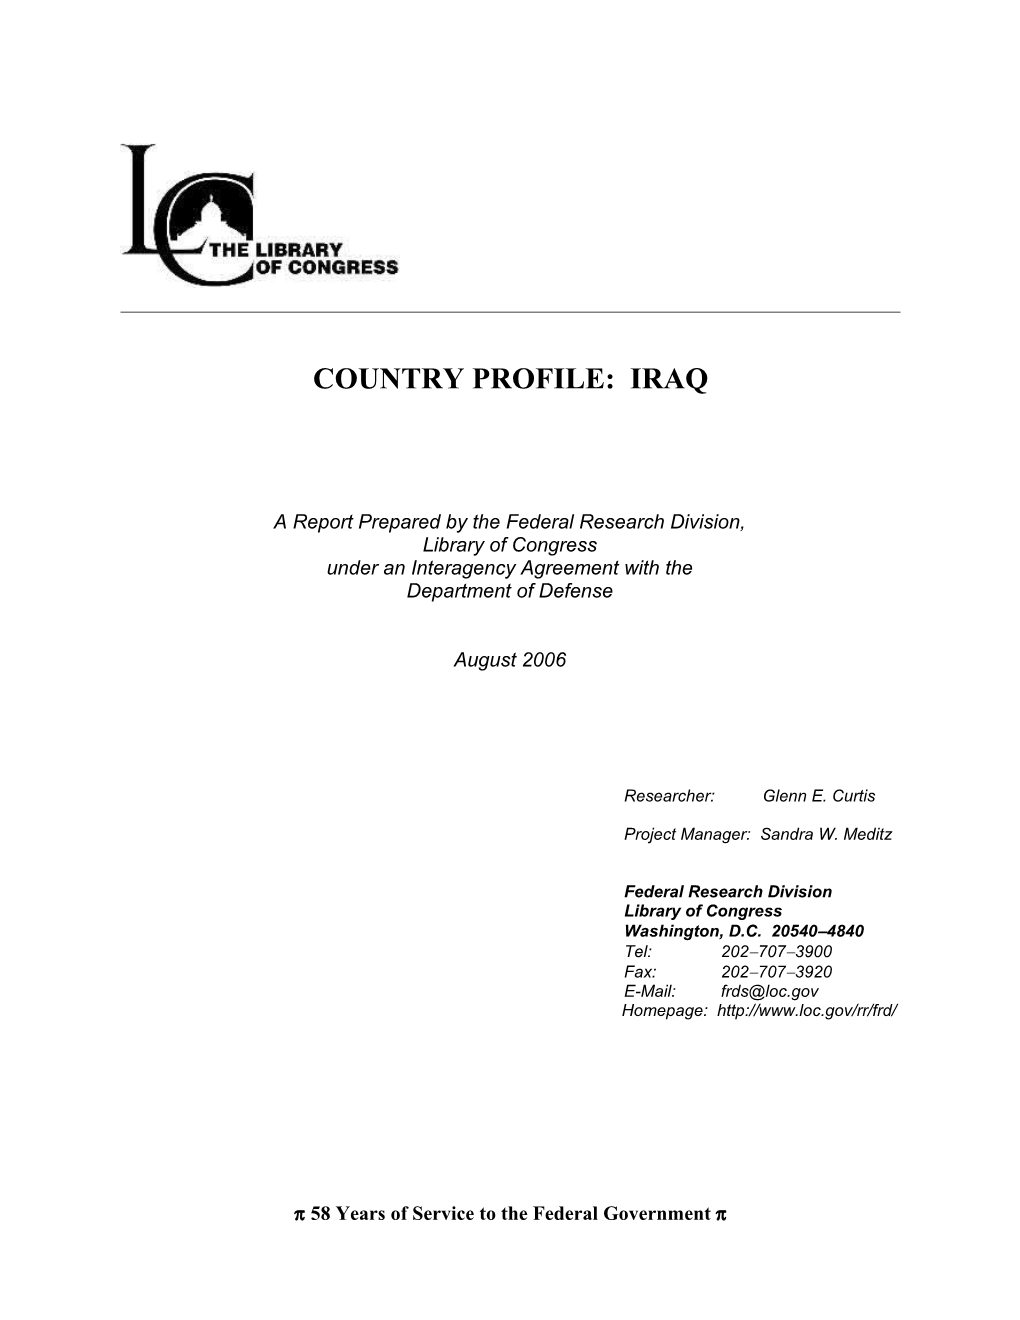 Country Profile Iraq